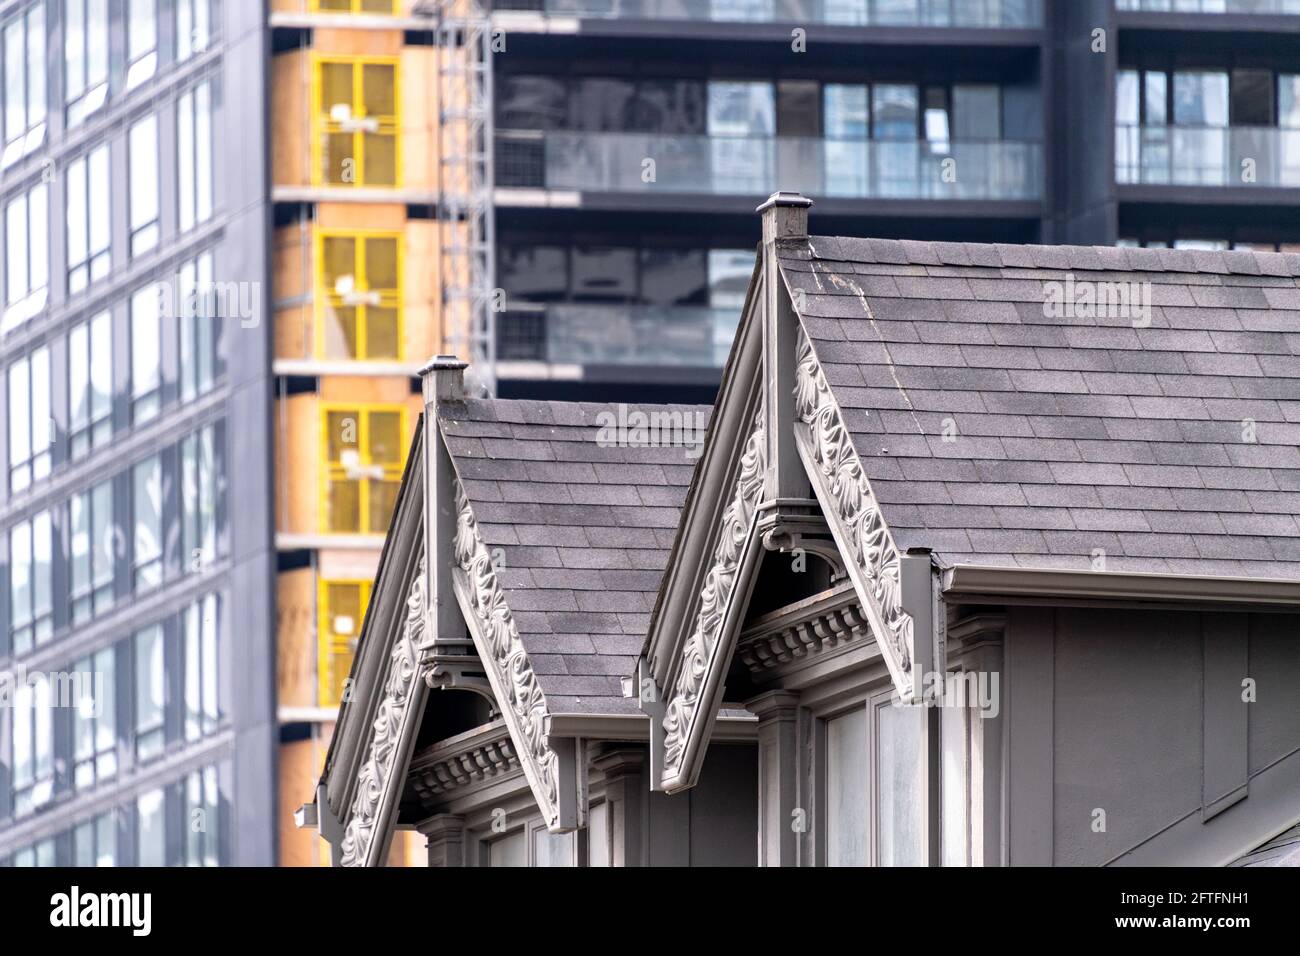 Contraste architectural de l'architecture de style victorien et des gratte-ciels modernes dans la rue Yonge, au centre-ville de Toronto, au Canada Banque D'Images